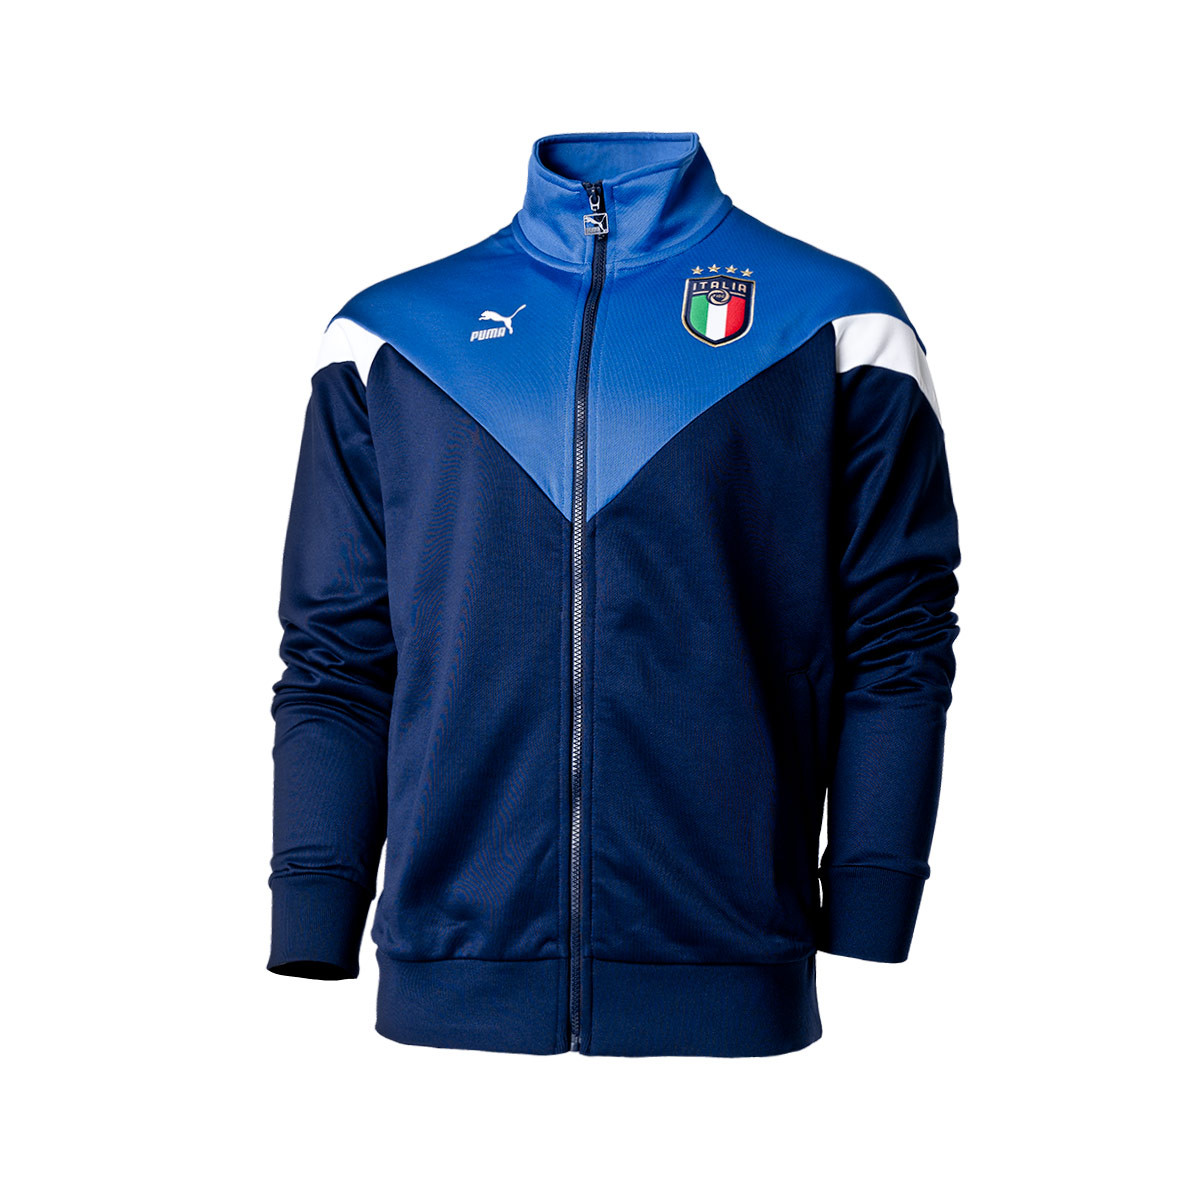 puma italia jacket blue